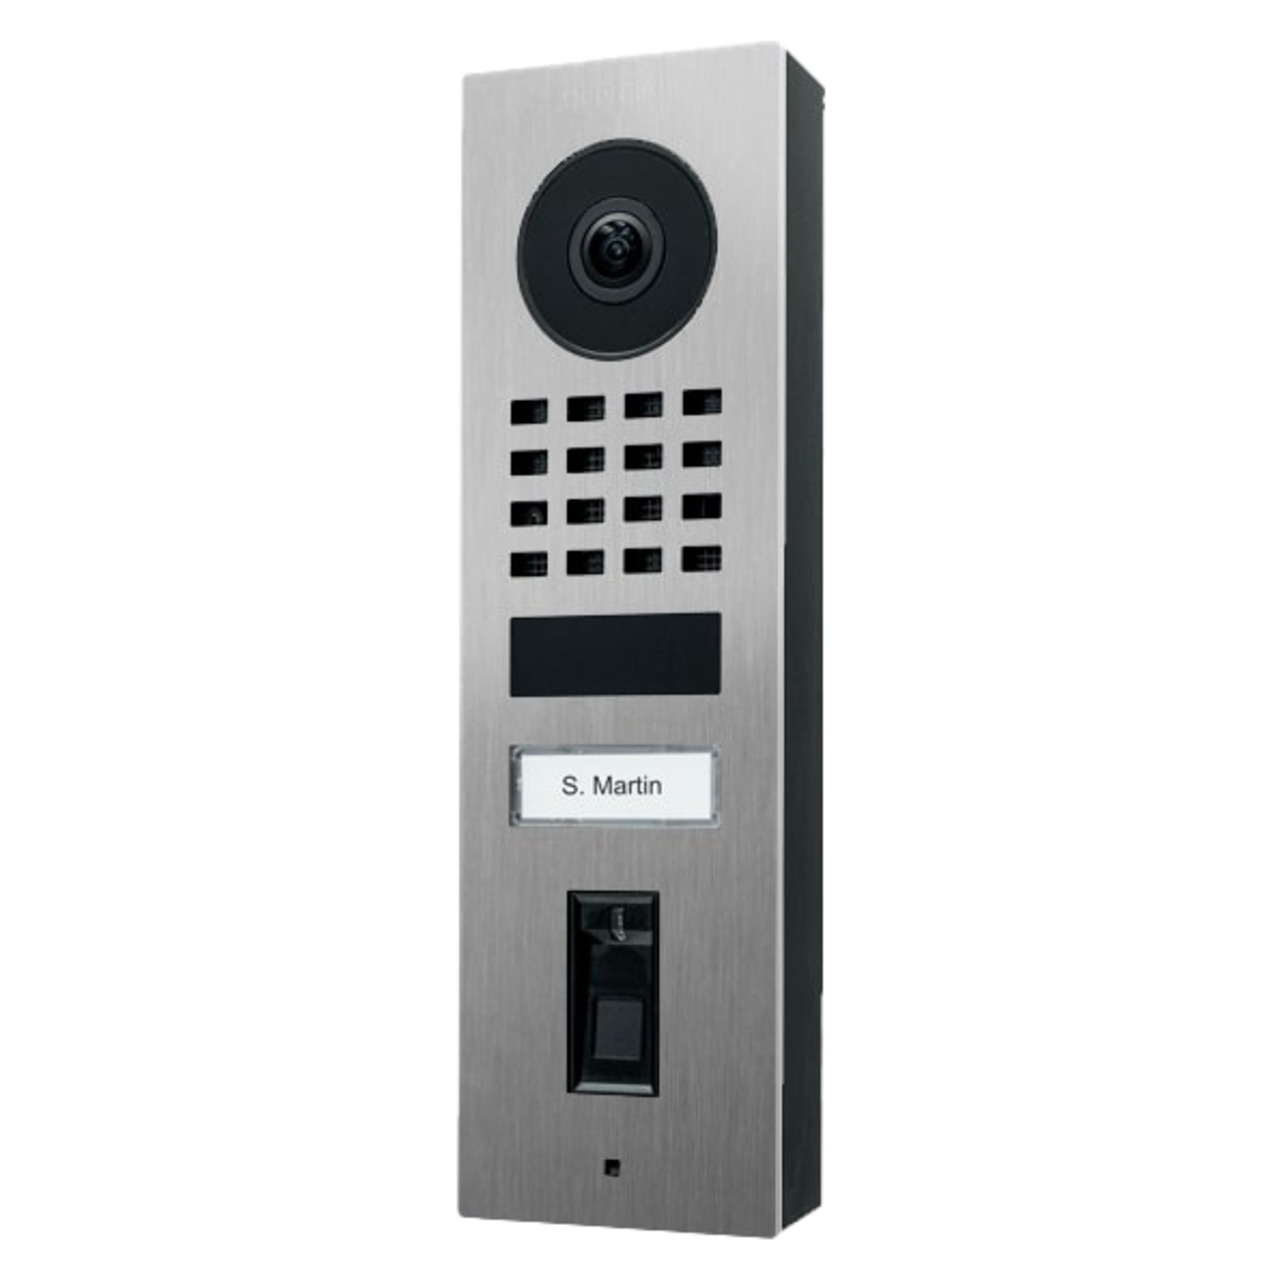 DoorBird WLAN-IP-Video-Fingerprint-Trstation D1101FV Edelstahl V4A- Aufputz